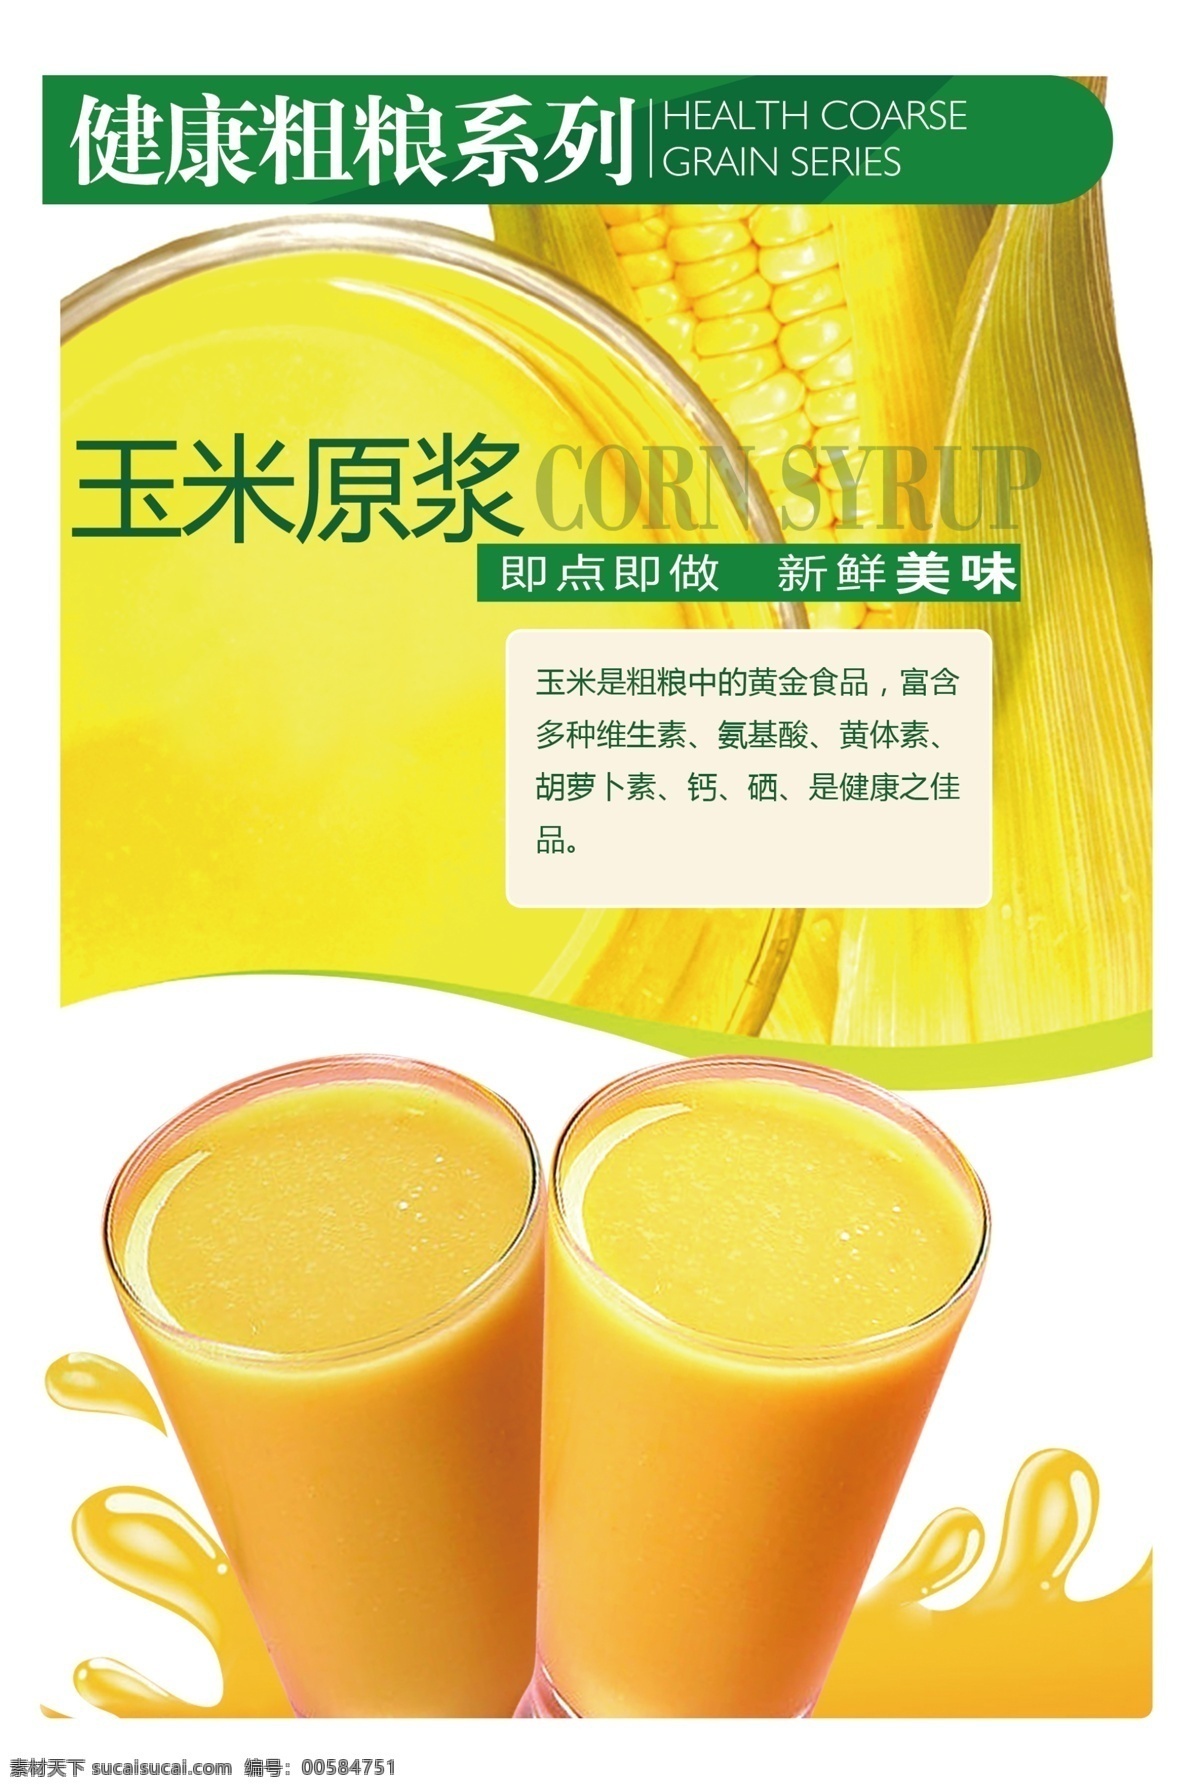 玉米汁 水果灯箱片 玉米汁广告 饮料广告 鲜榨玉米汁 分层